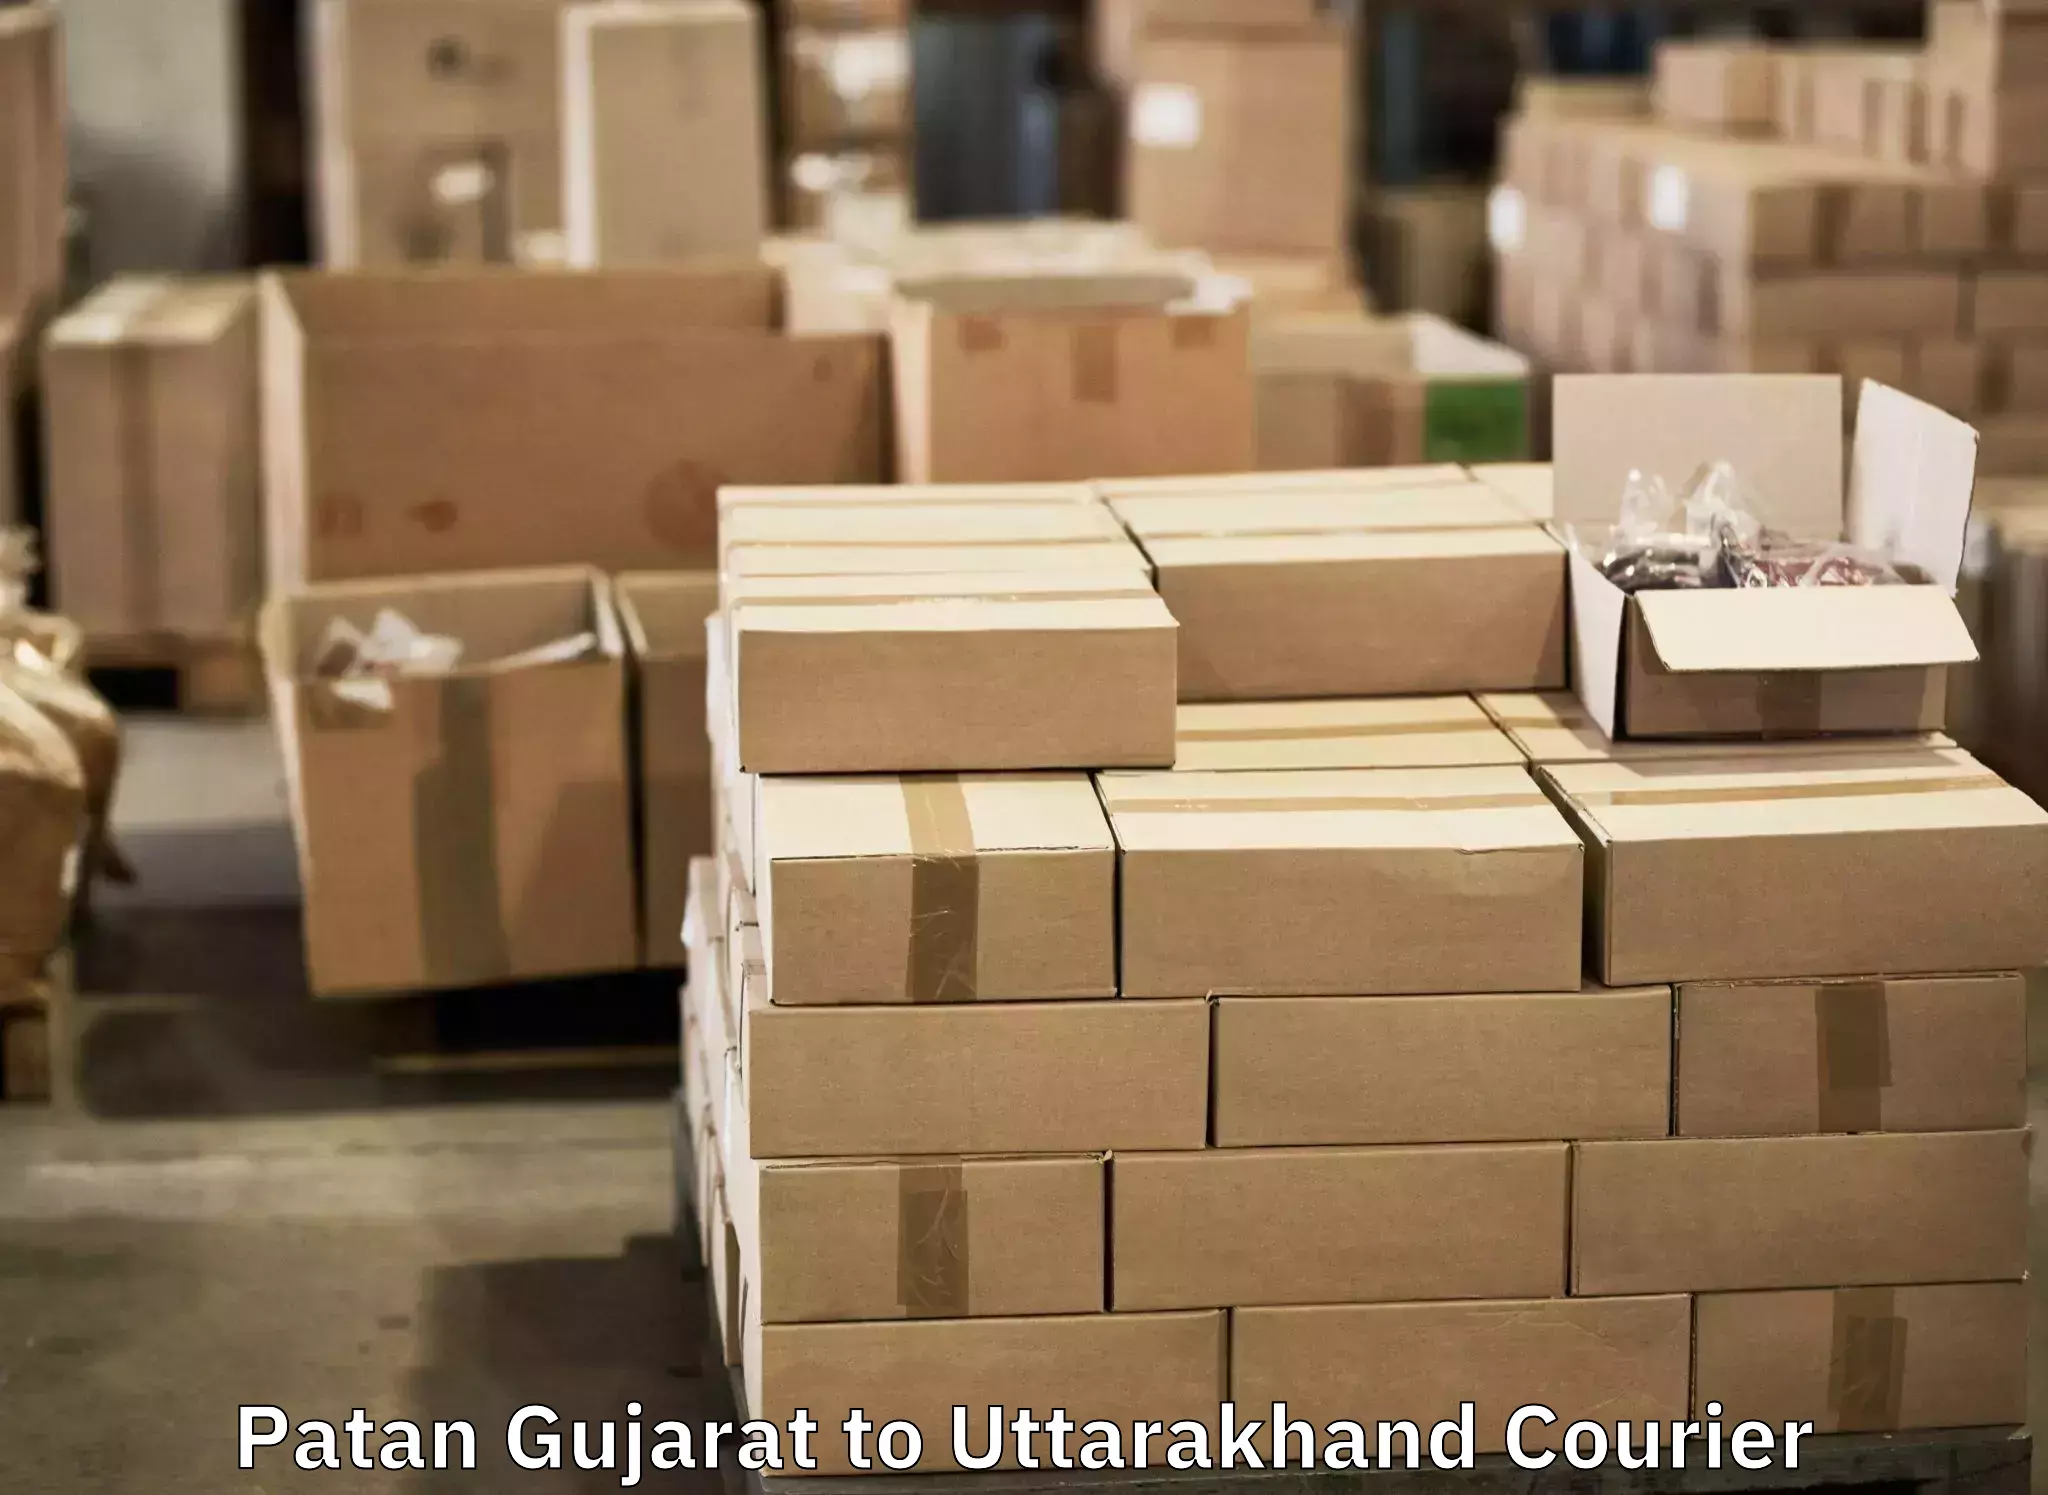 Baggage transport management Patan Gujarat to Gairsain